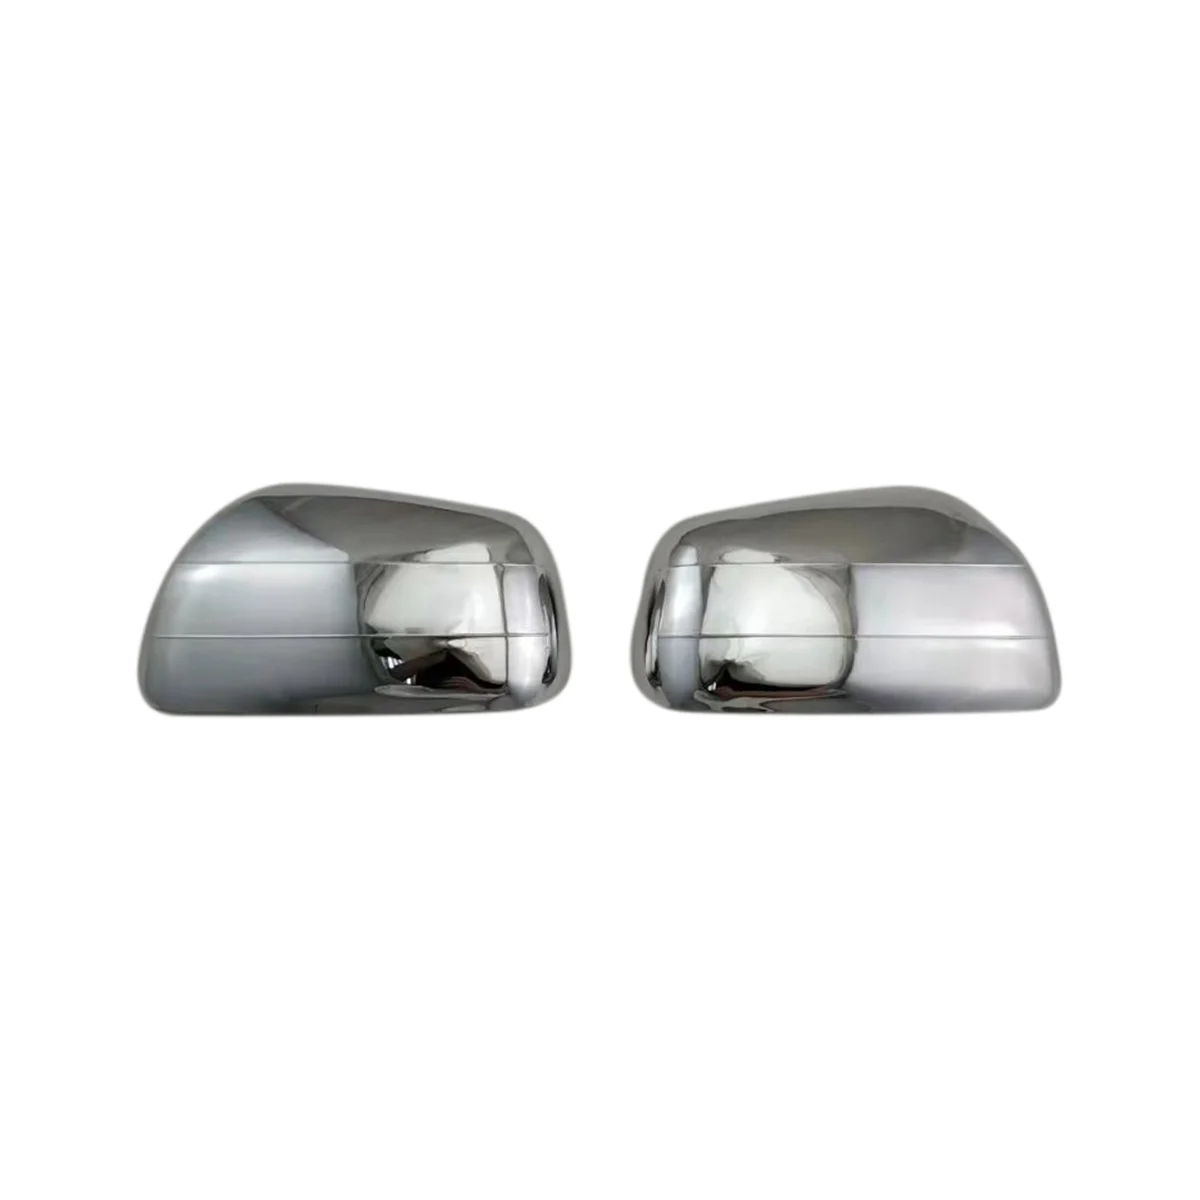 Автомобильная Хромированная Серебристая Накладка на Боковое зеркало заднего вида, Чехлы для зеркал заднего вида Toyota Corolla Spacio 2001-2007